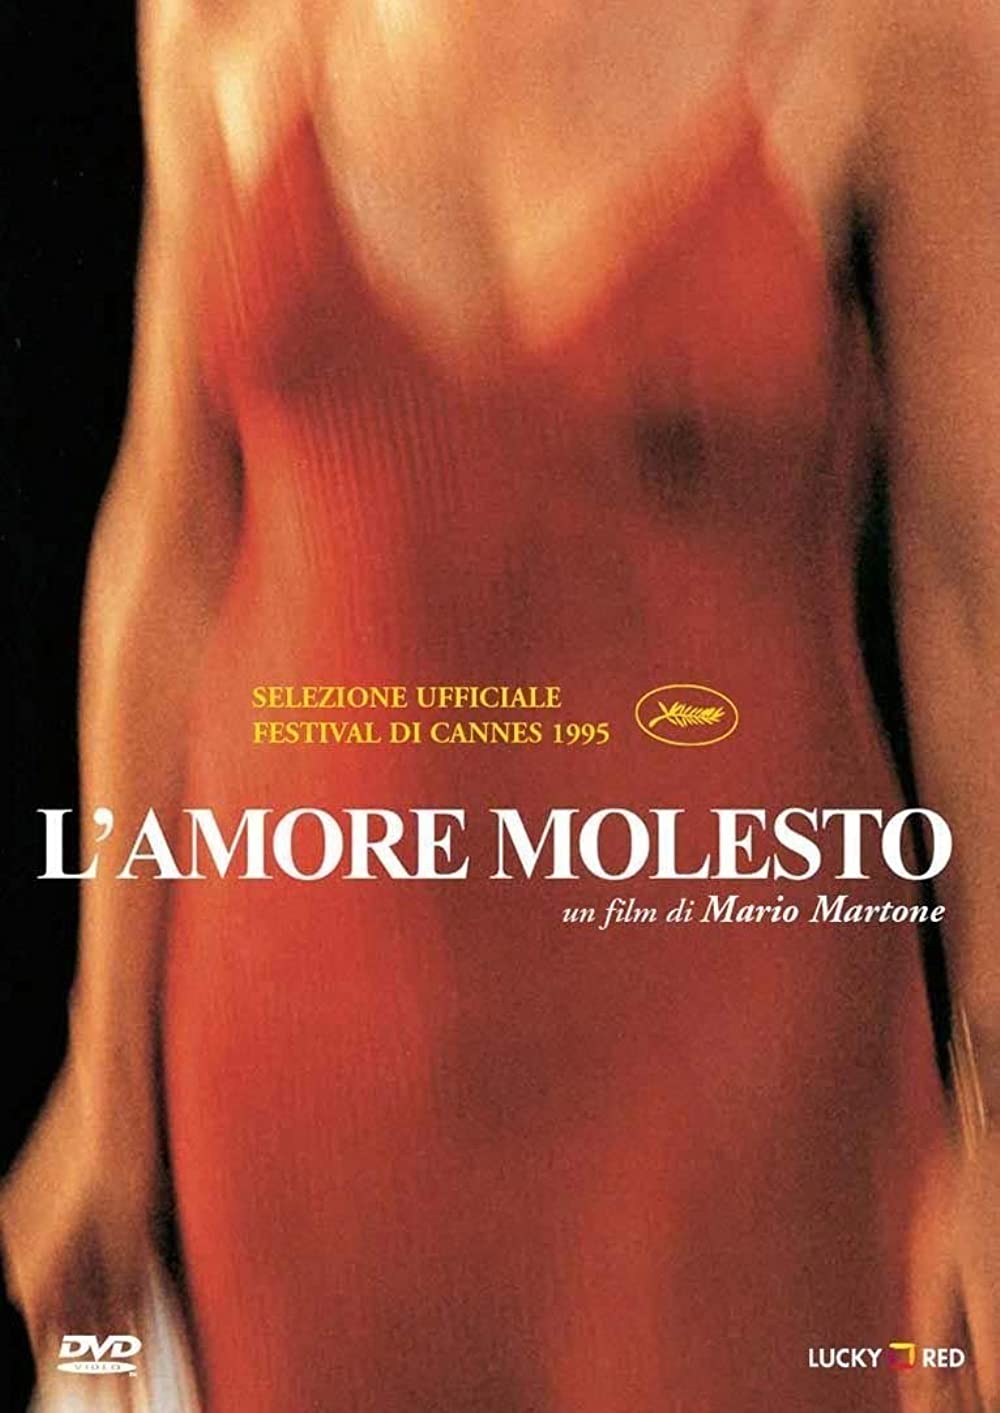 Filmbeschreibung zu L'amore molesto (OV)